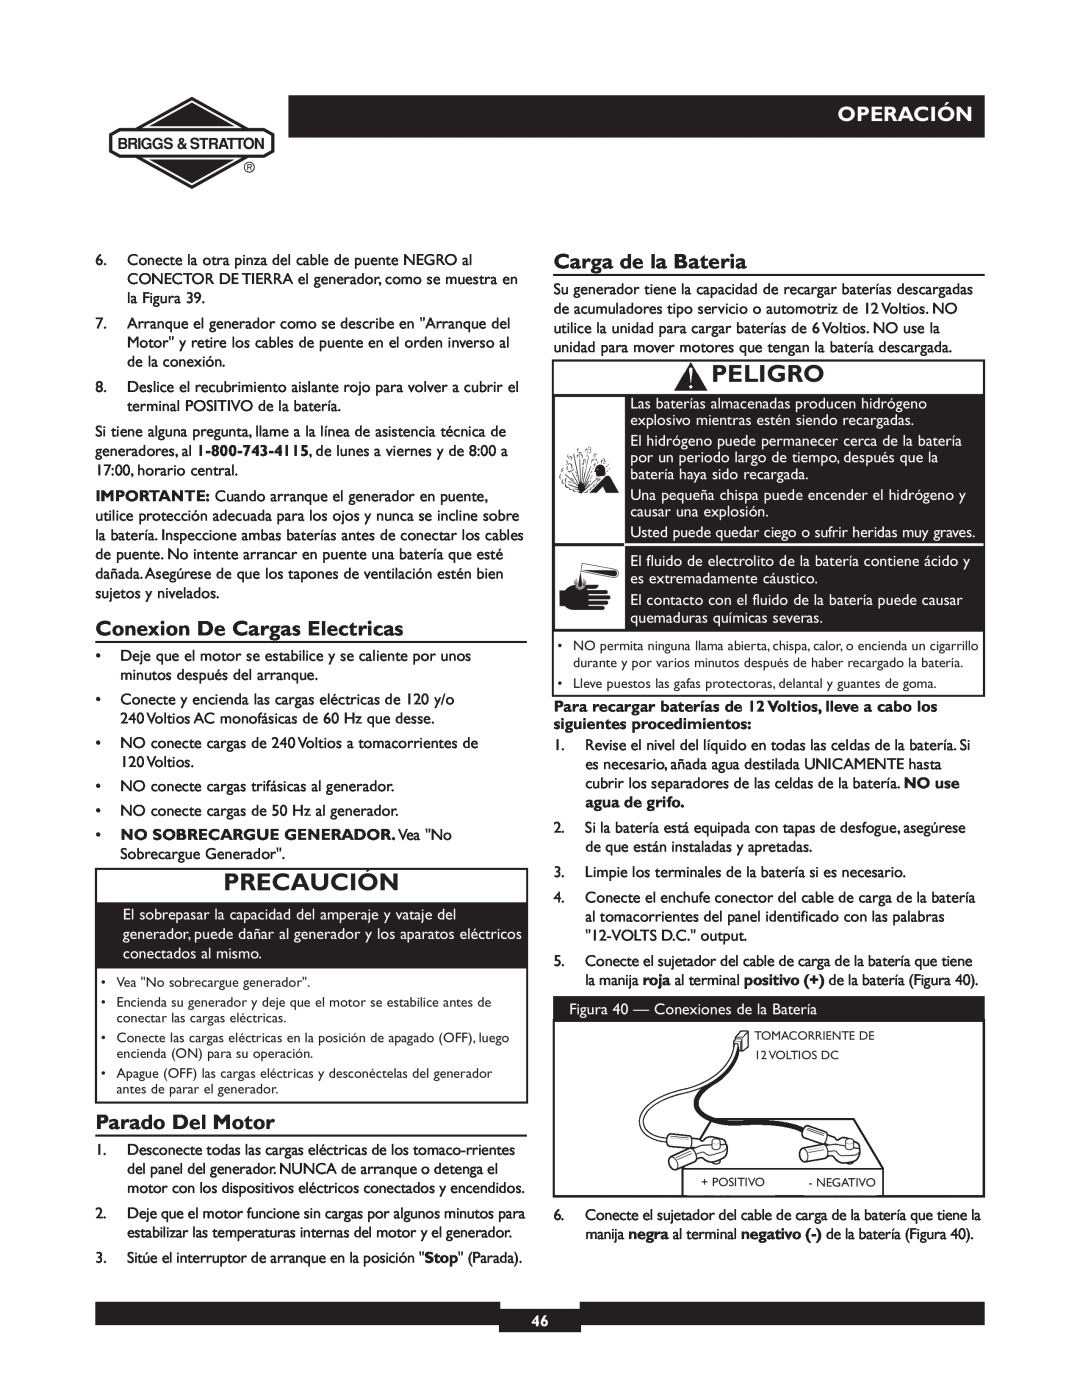 Briggs & Stratton 01894-1 manual Conexion De Cargas Electricas, Parado Del Motor, Carga de la Bateria, Precaución, Peligro 